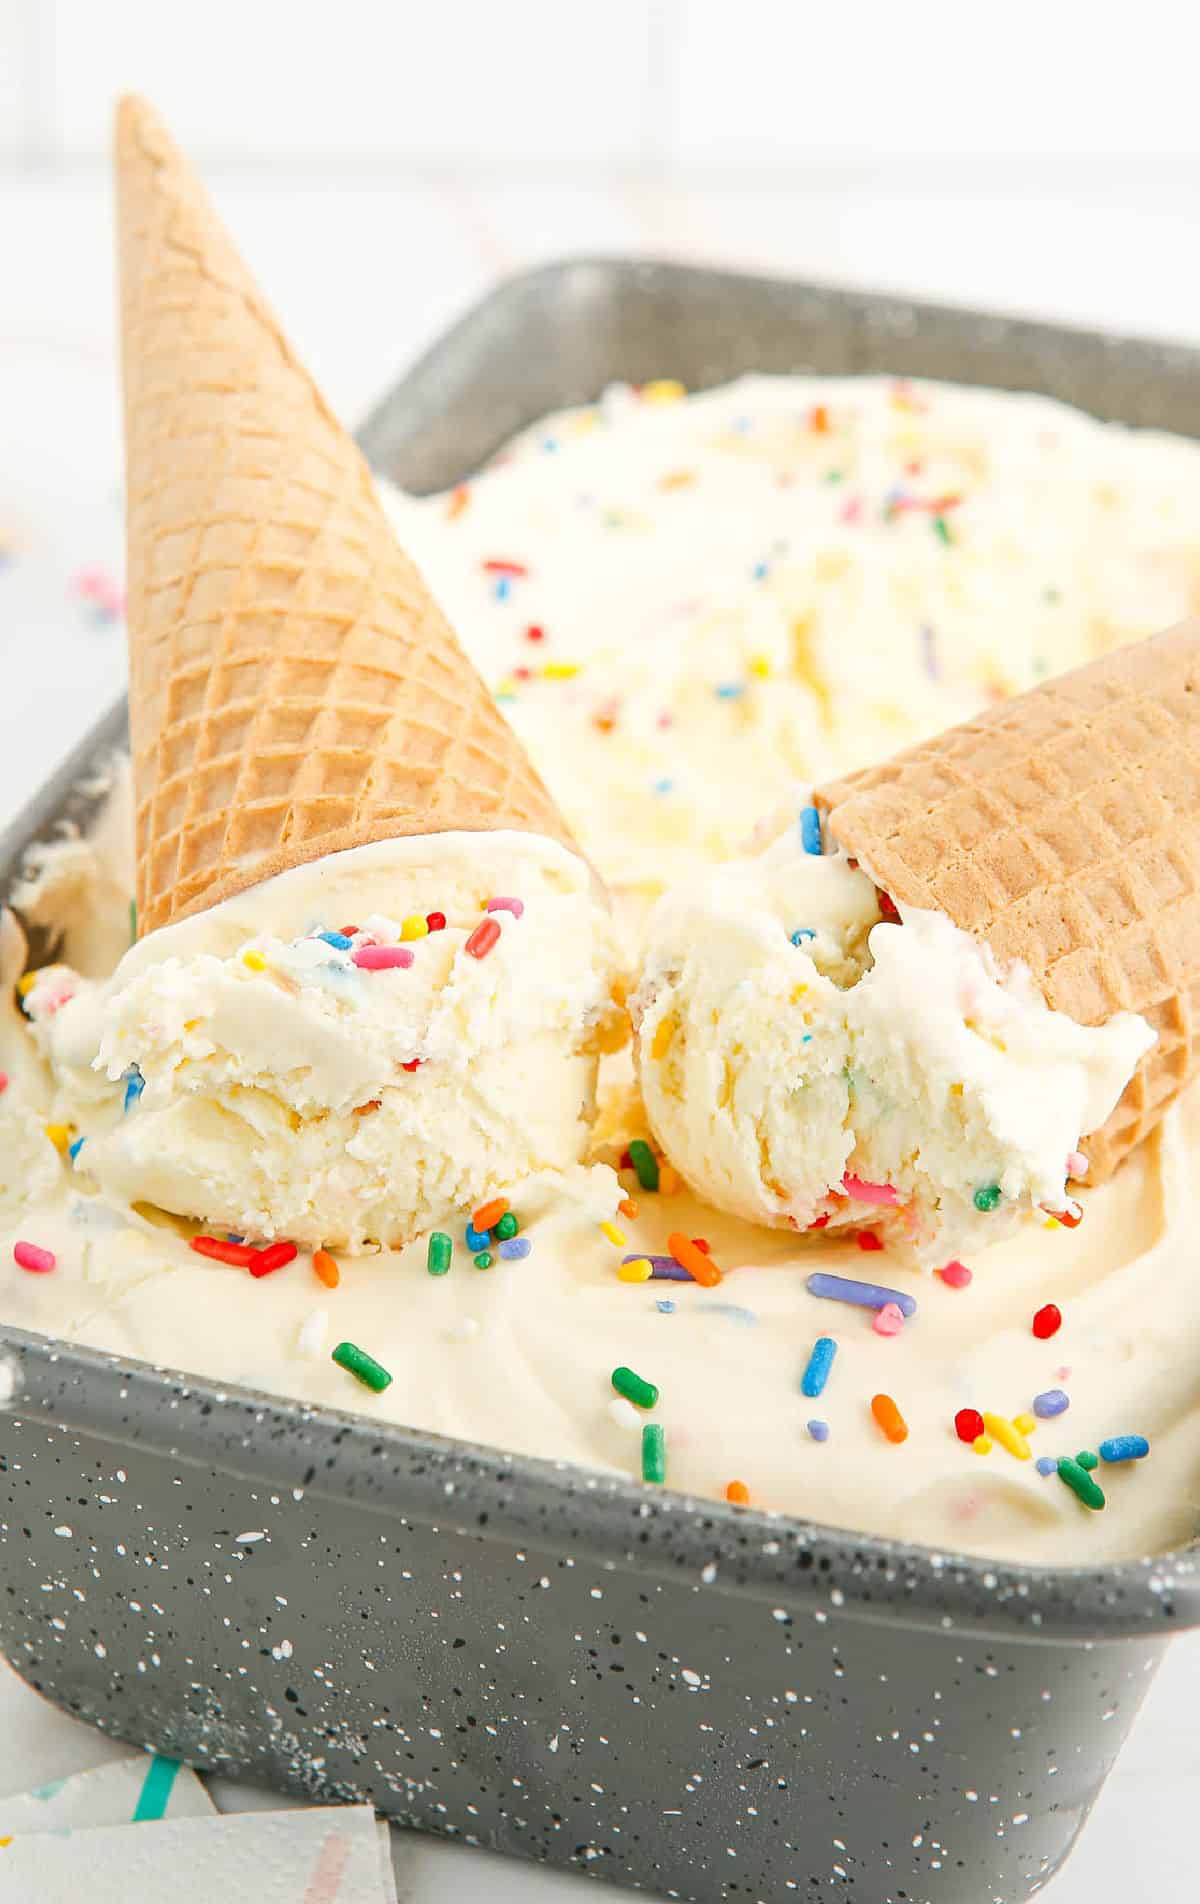 Dos conos de azúcar colocados encima del helado.